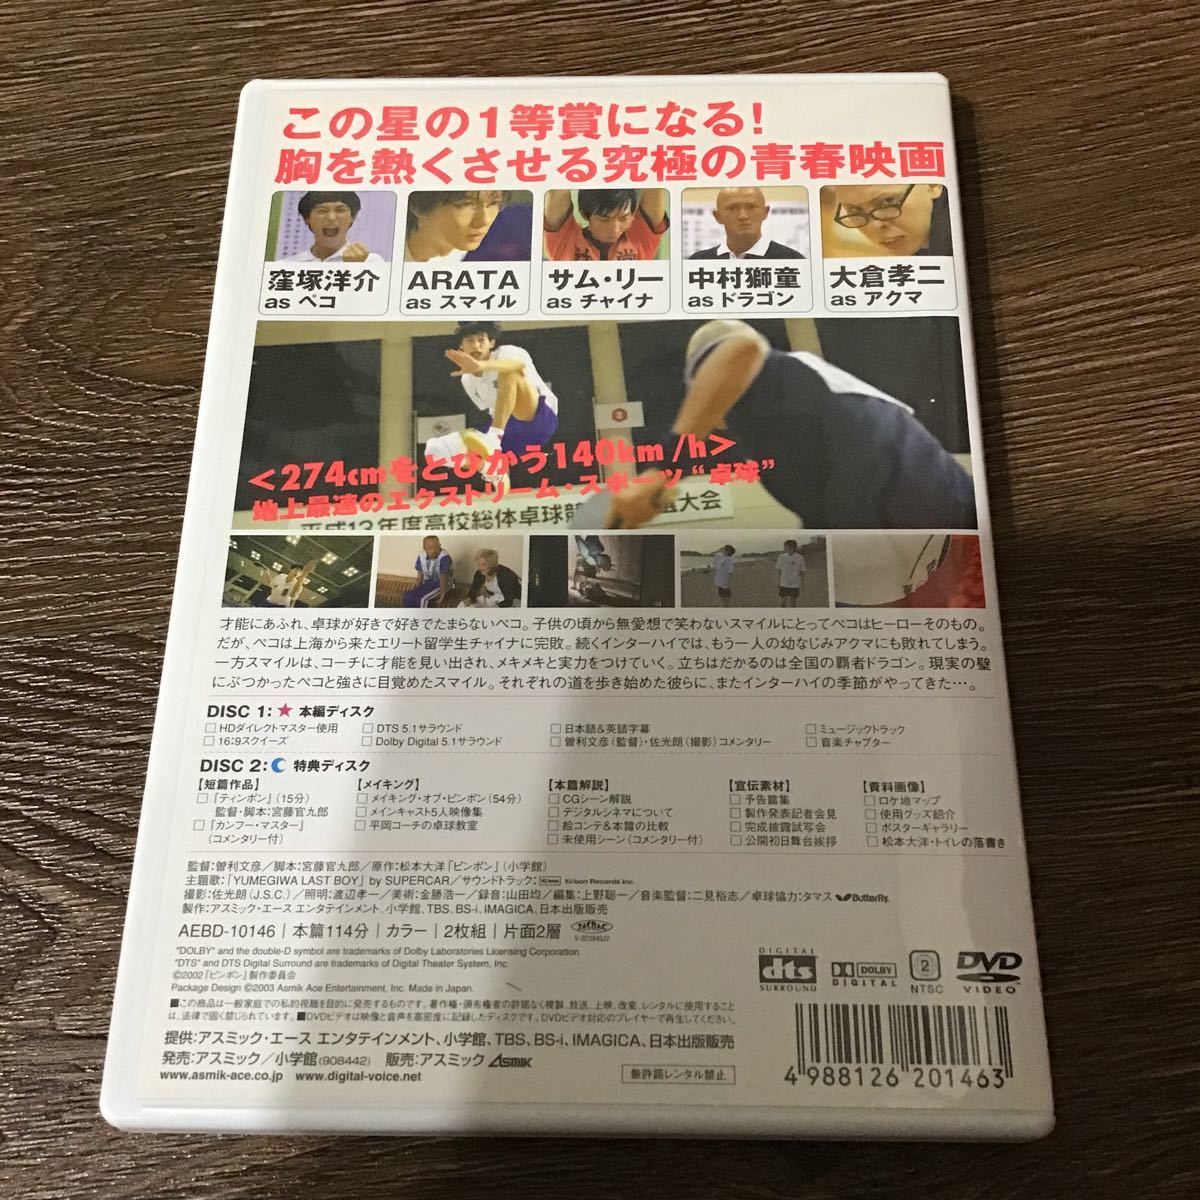 ピンポン 2枚組DTS特別版 (初回生産限定版) DVD_画像2